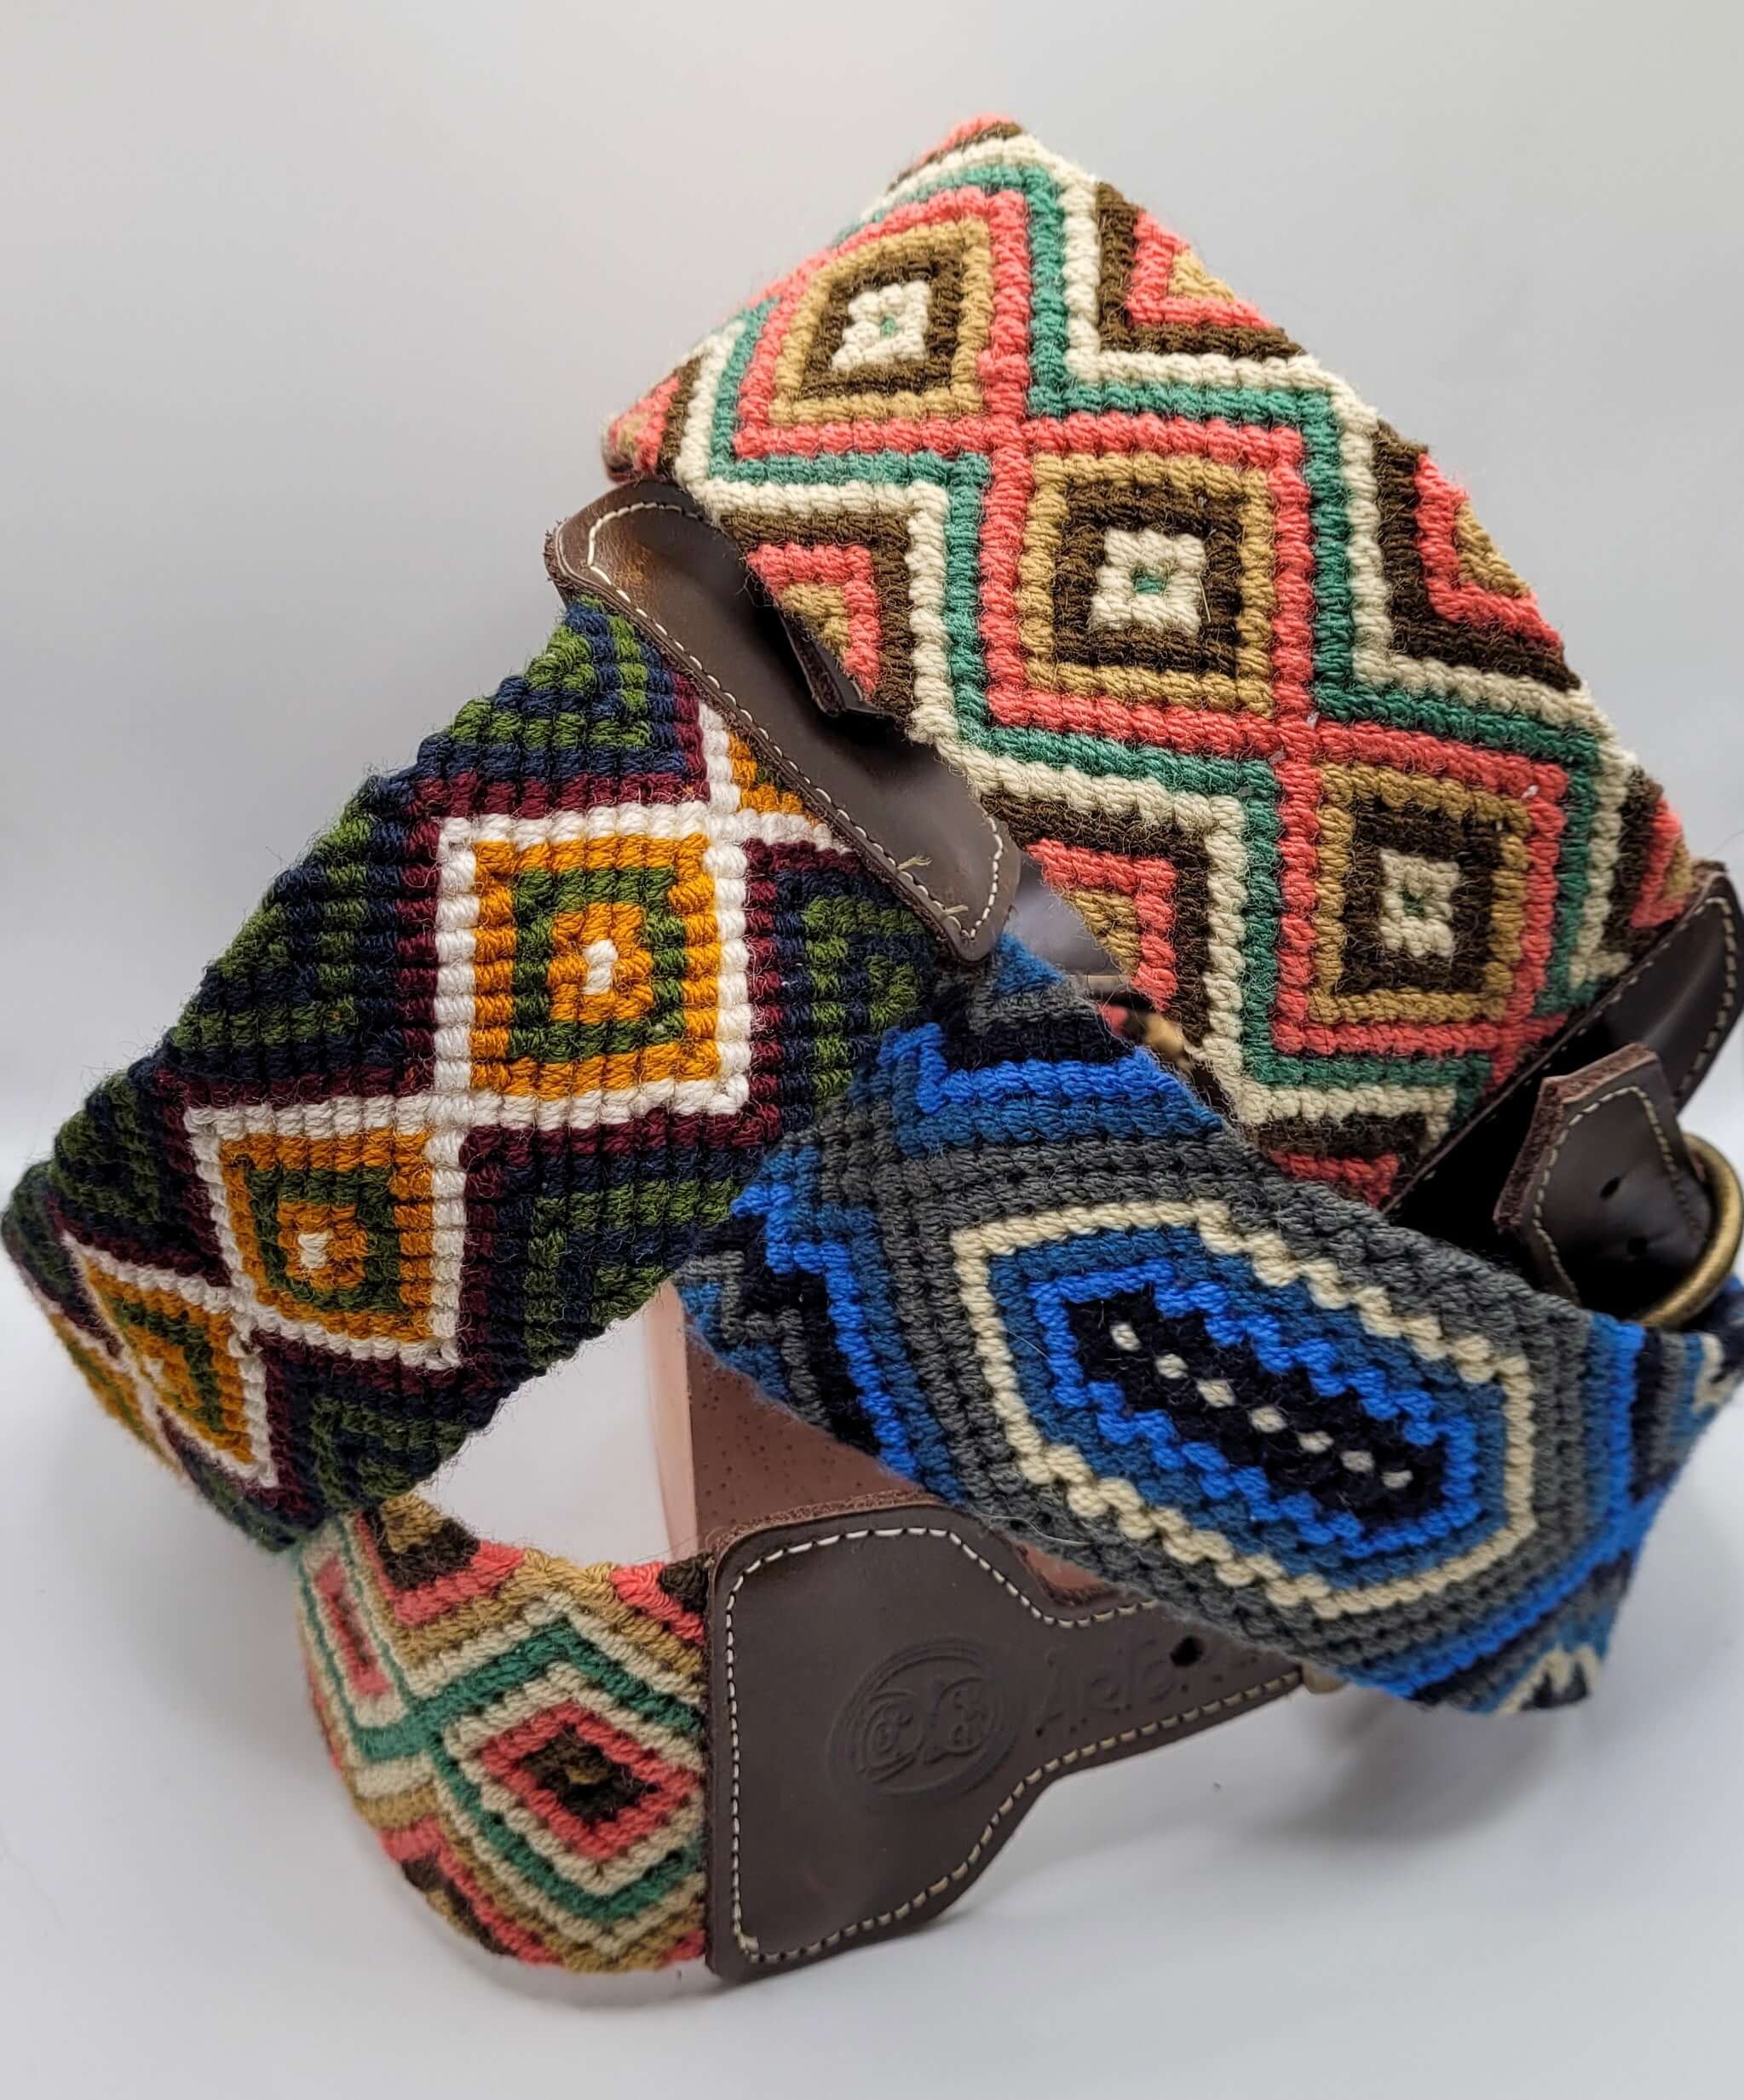 Handmade artisan woven boho dog collars